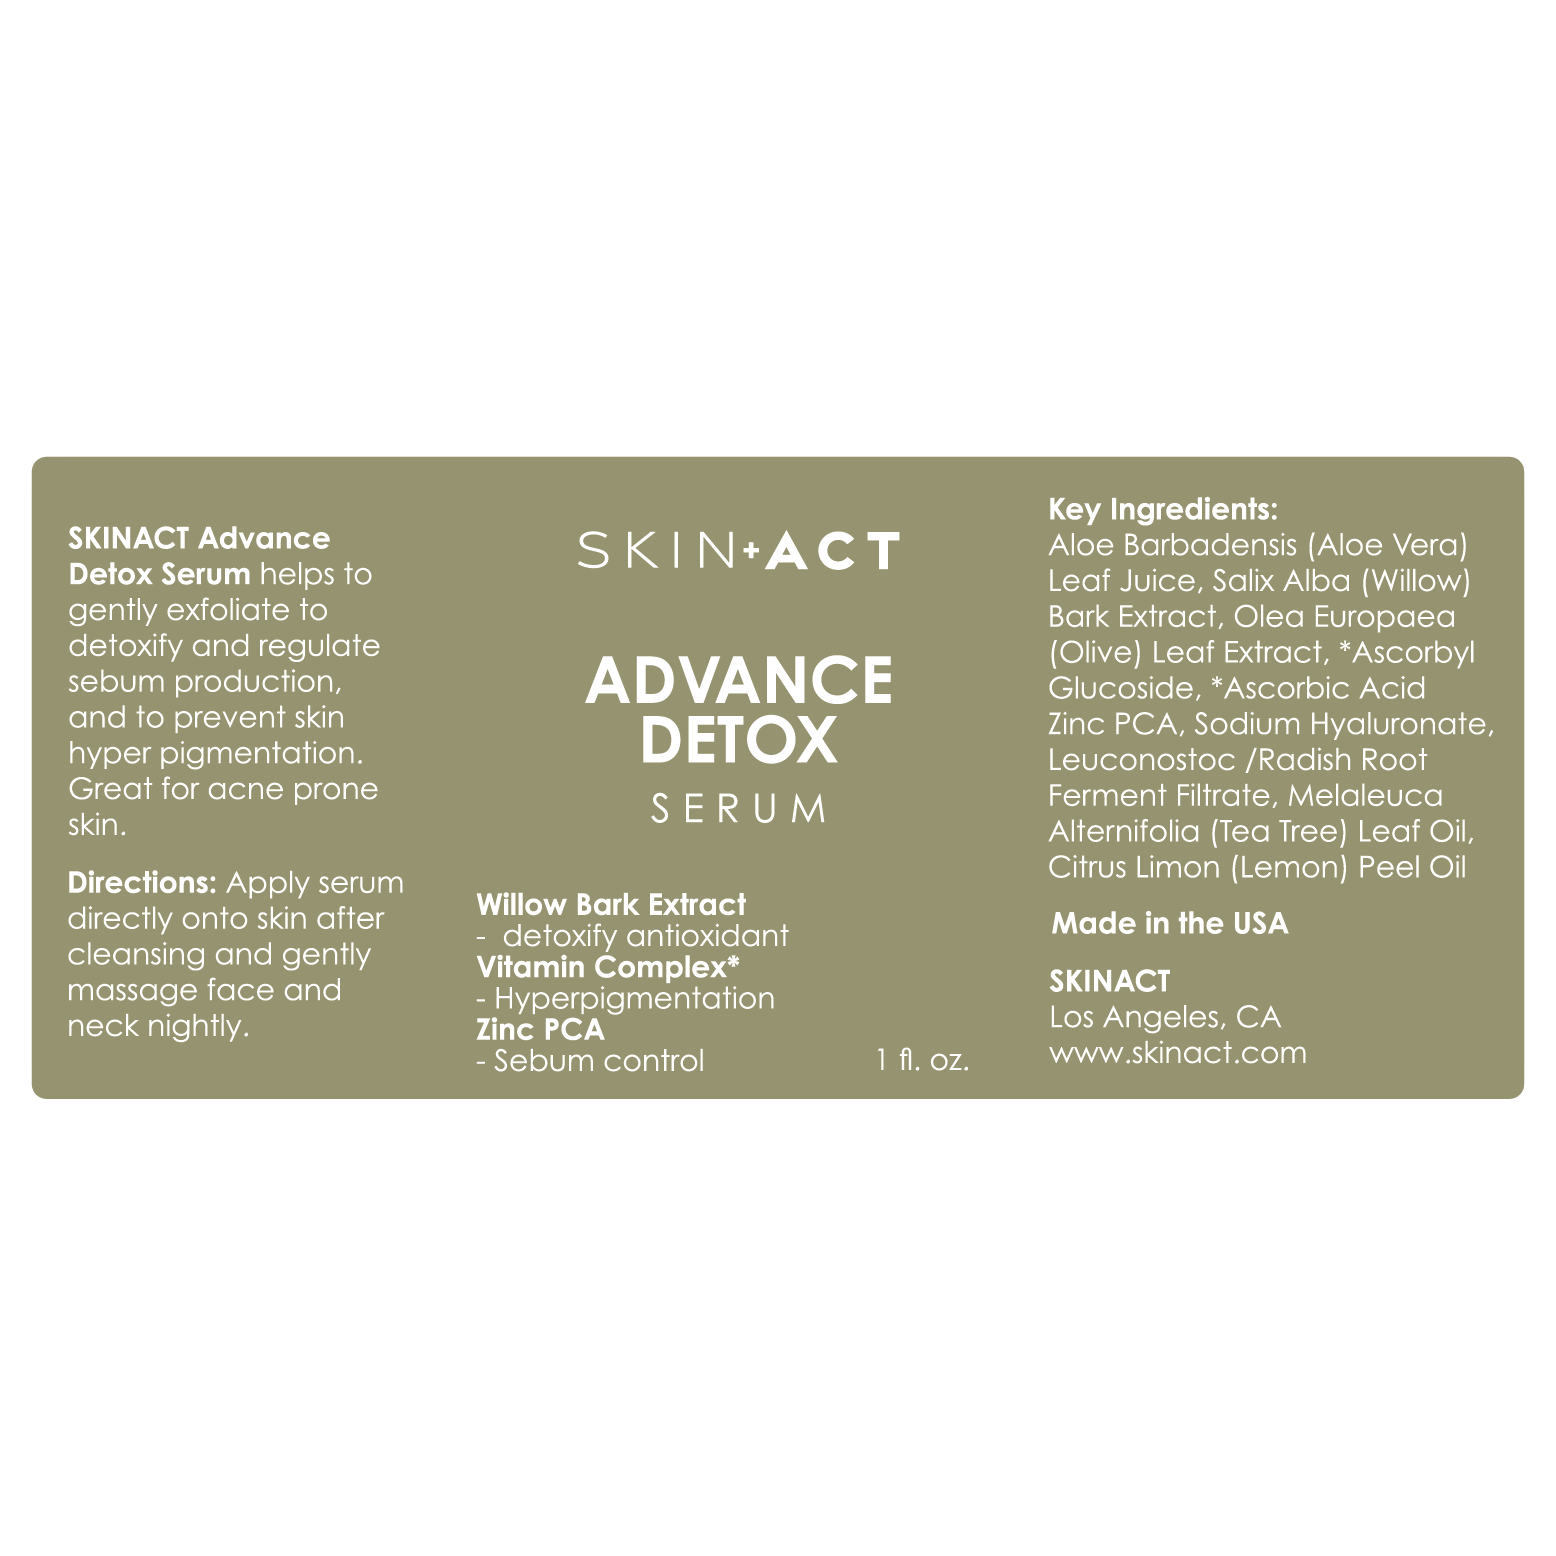 SkinAct Advance Detox Serum